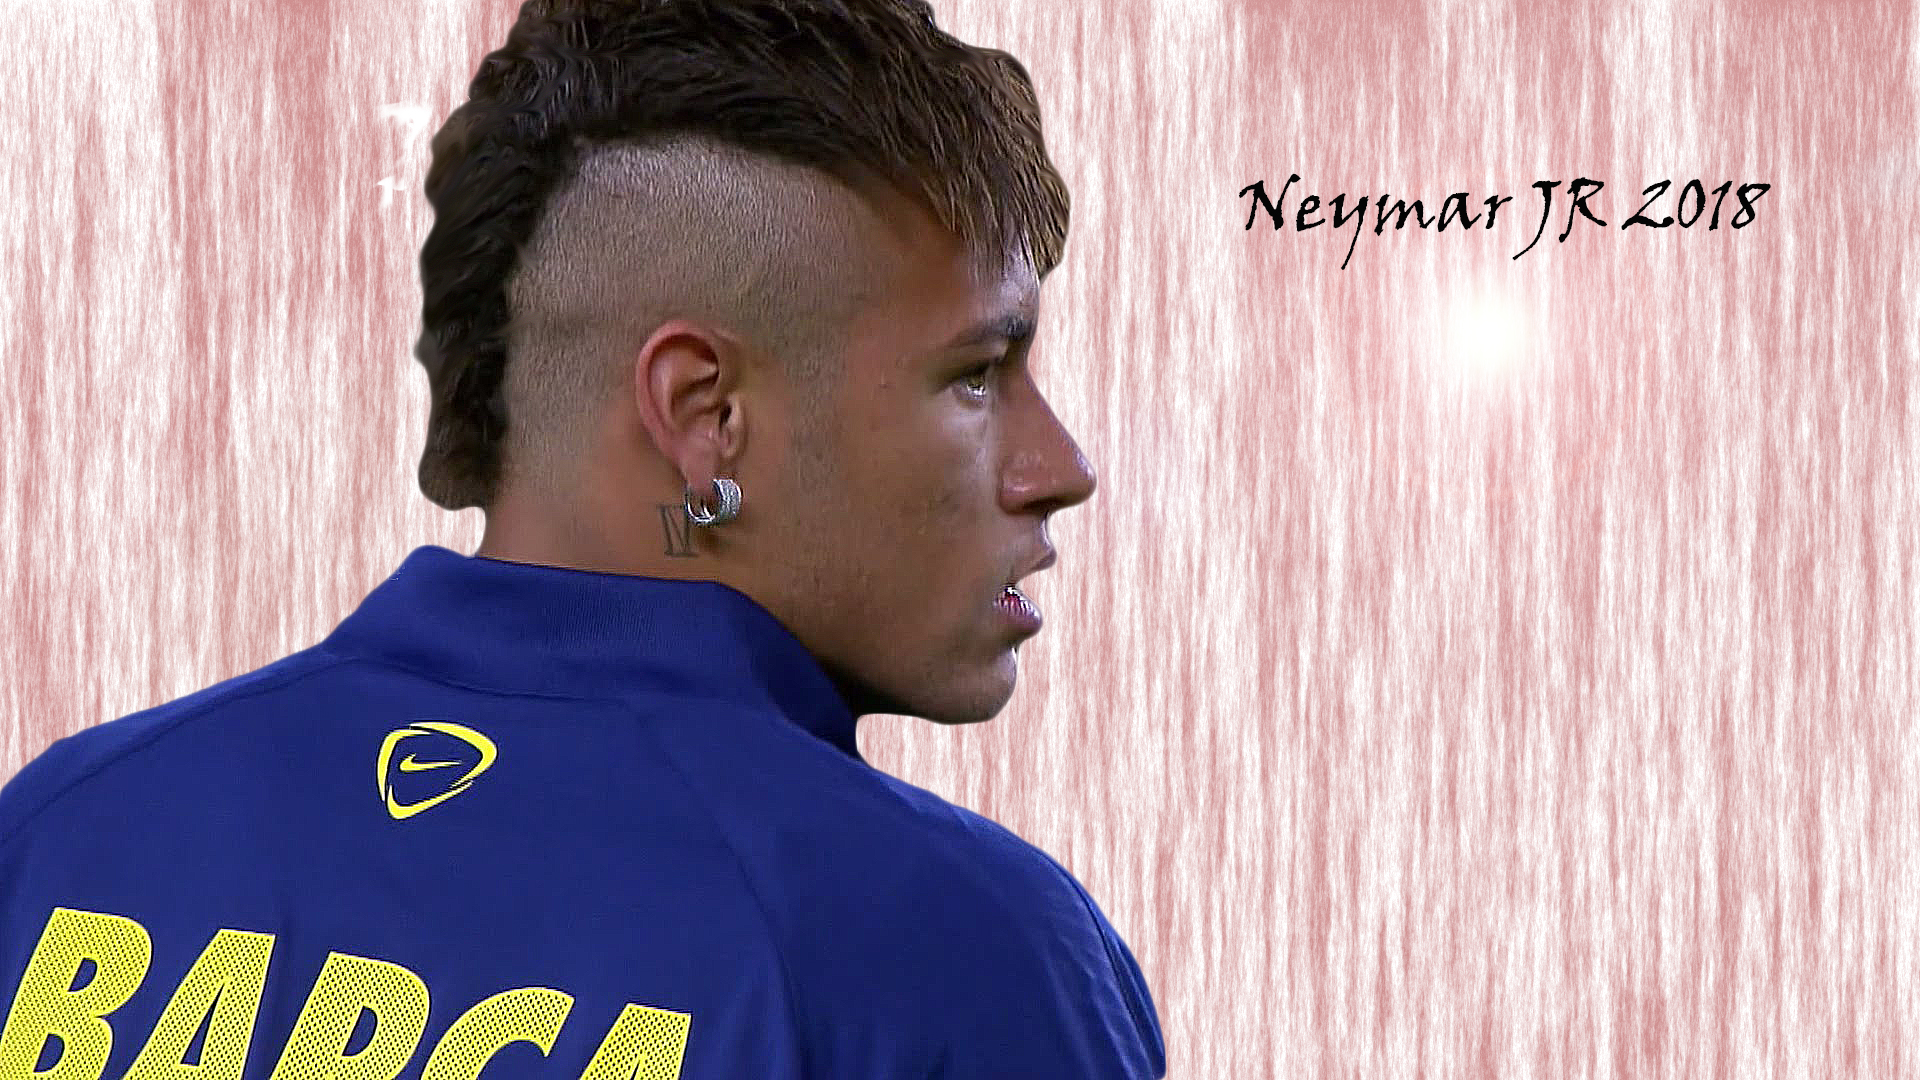 neymar jr best 2018 images